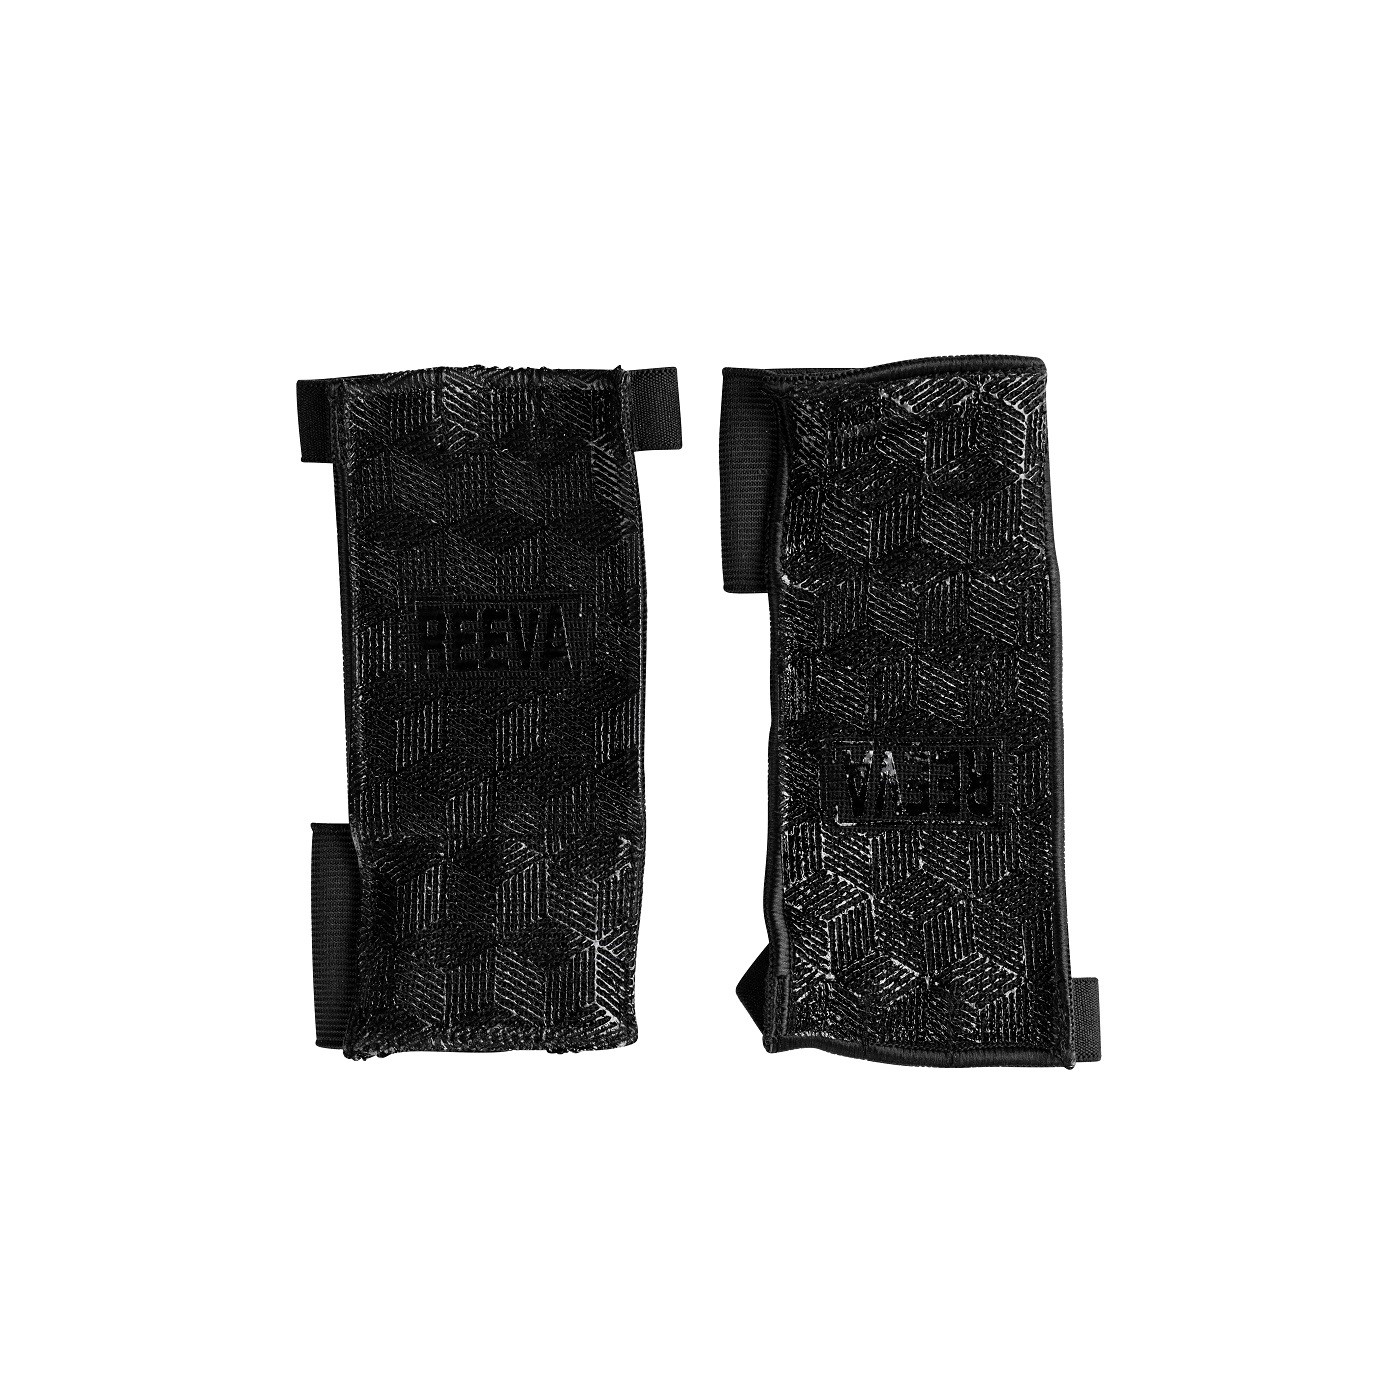 Reeva Ultra Feel Crossfit Handschoenen - L